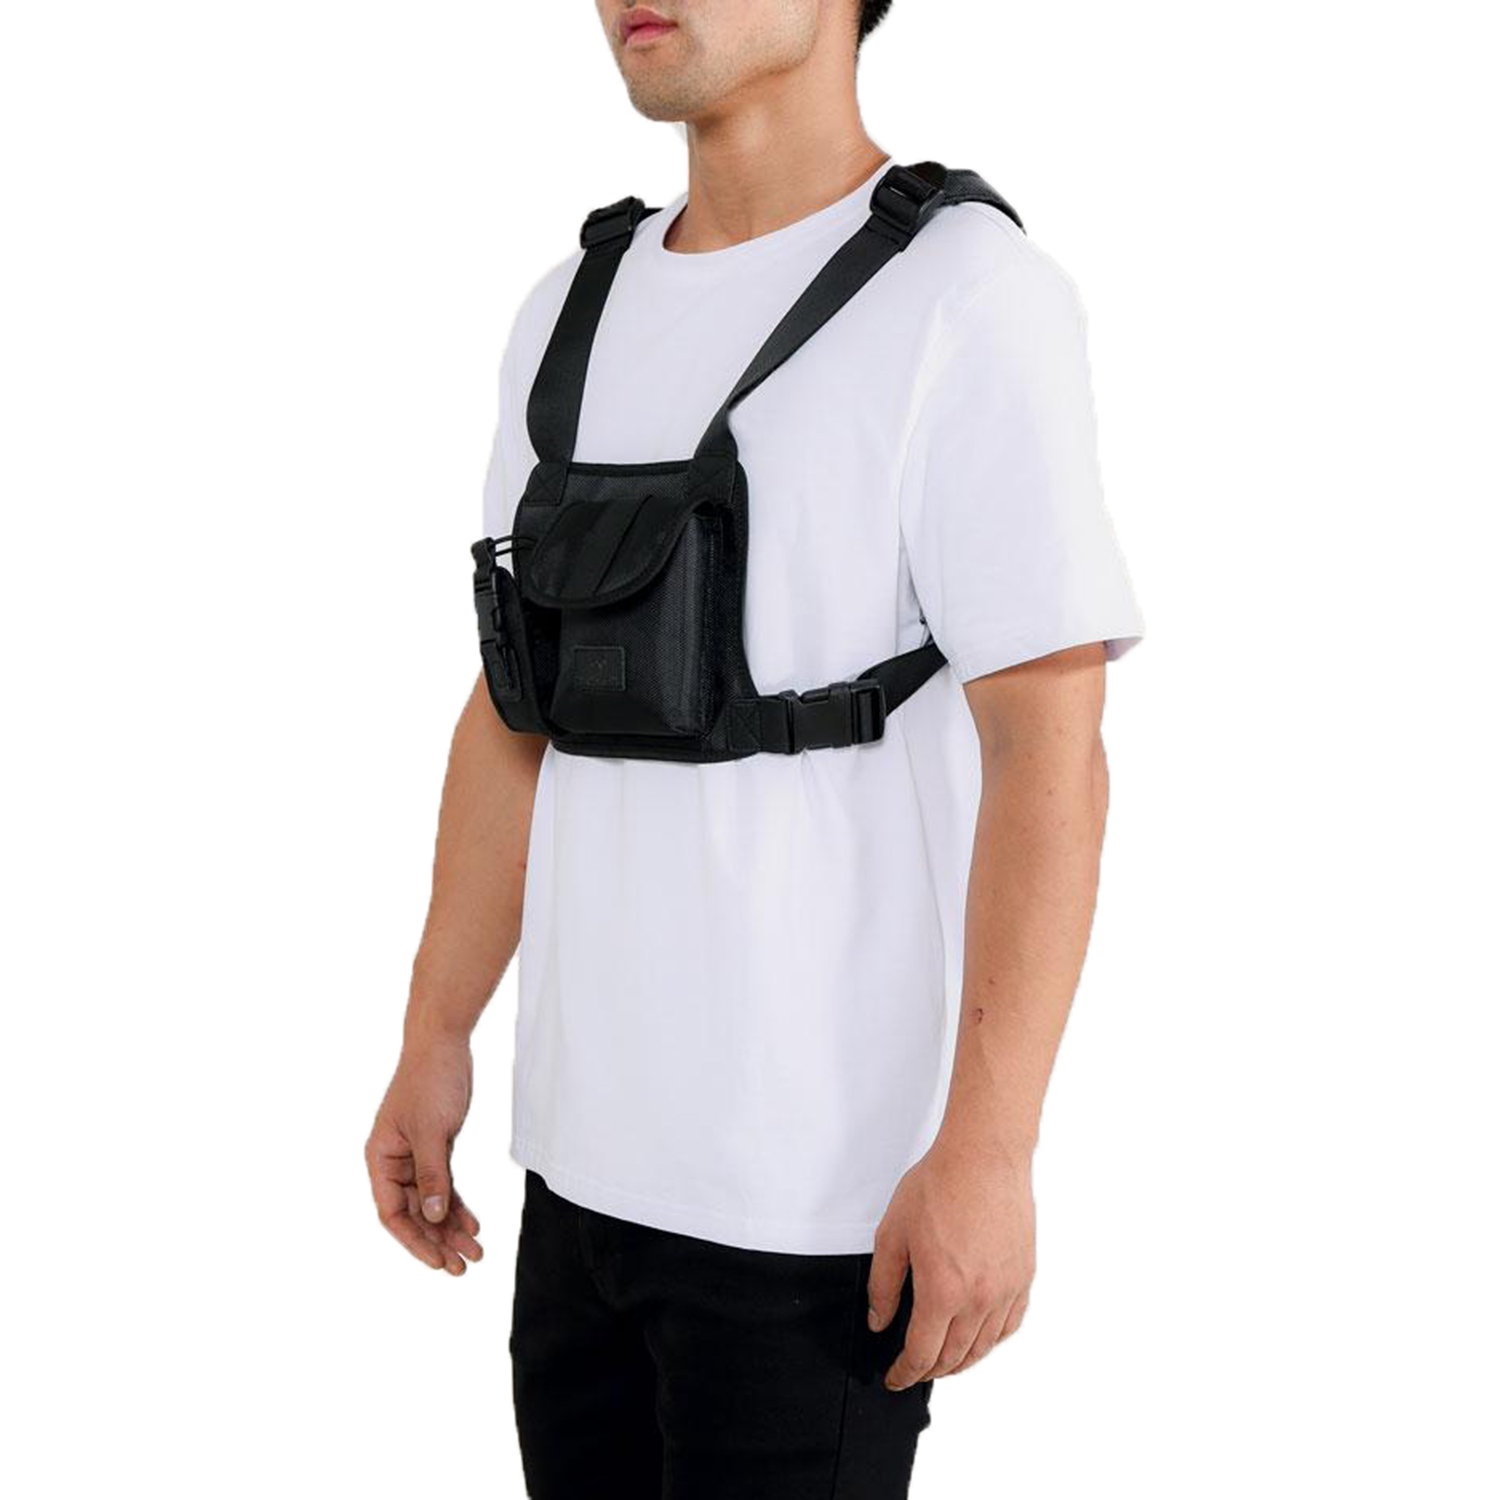 Hudson Men's Dual Pocket Chest Rig Bag Black H7052908 | eBay